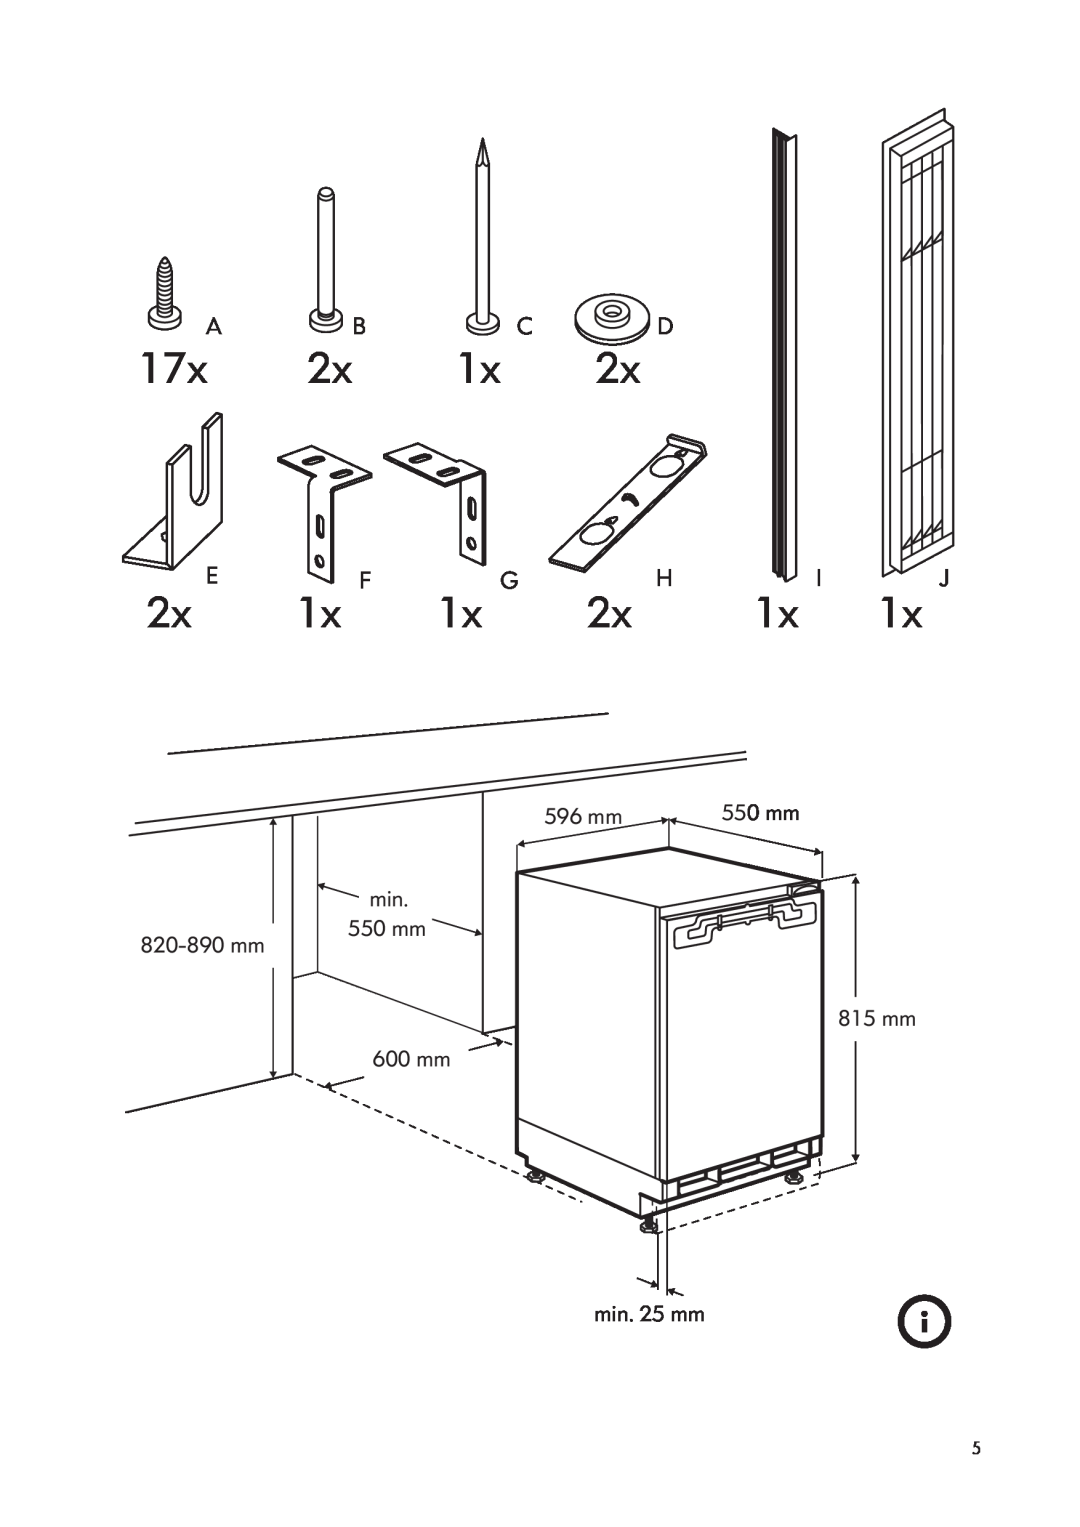 IKEA SC100/17 manual A Bc D, 17x 2x 1x, 2x E, 1x F, 1x G, 2x H, 1x J 